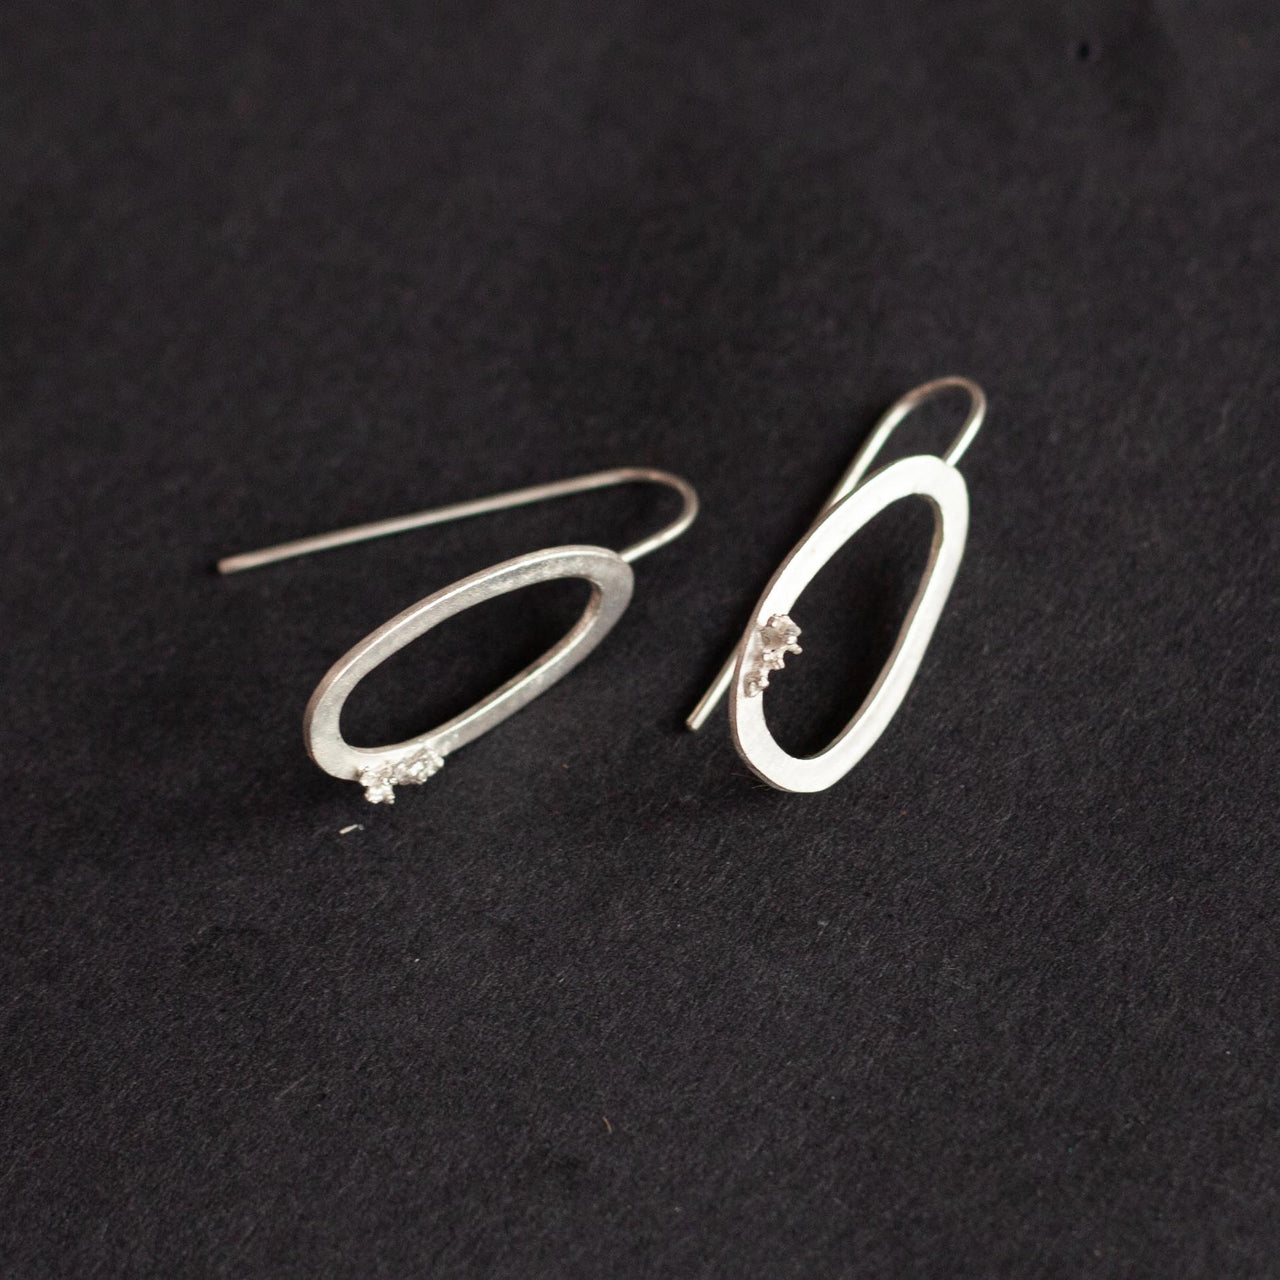 Libby Ward - Large moss earrings drop silver